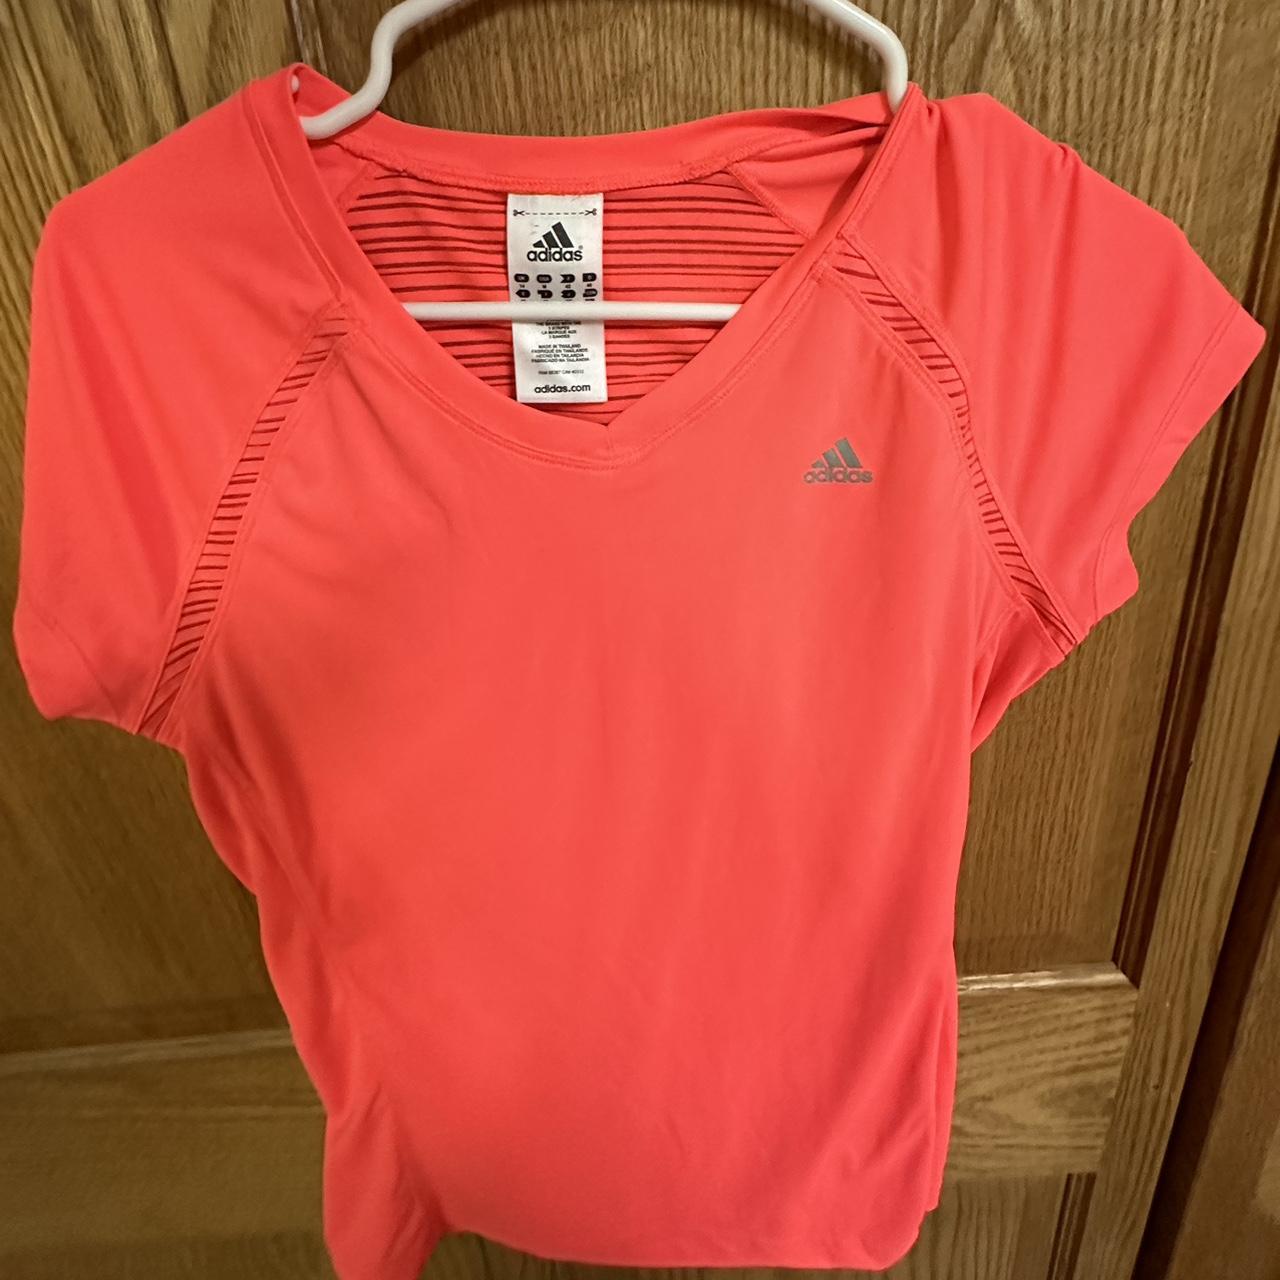 Adidas neon pink shirt lightweight Size medium - Depop